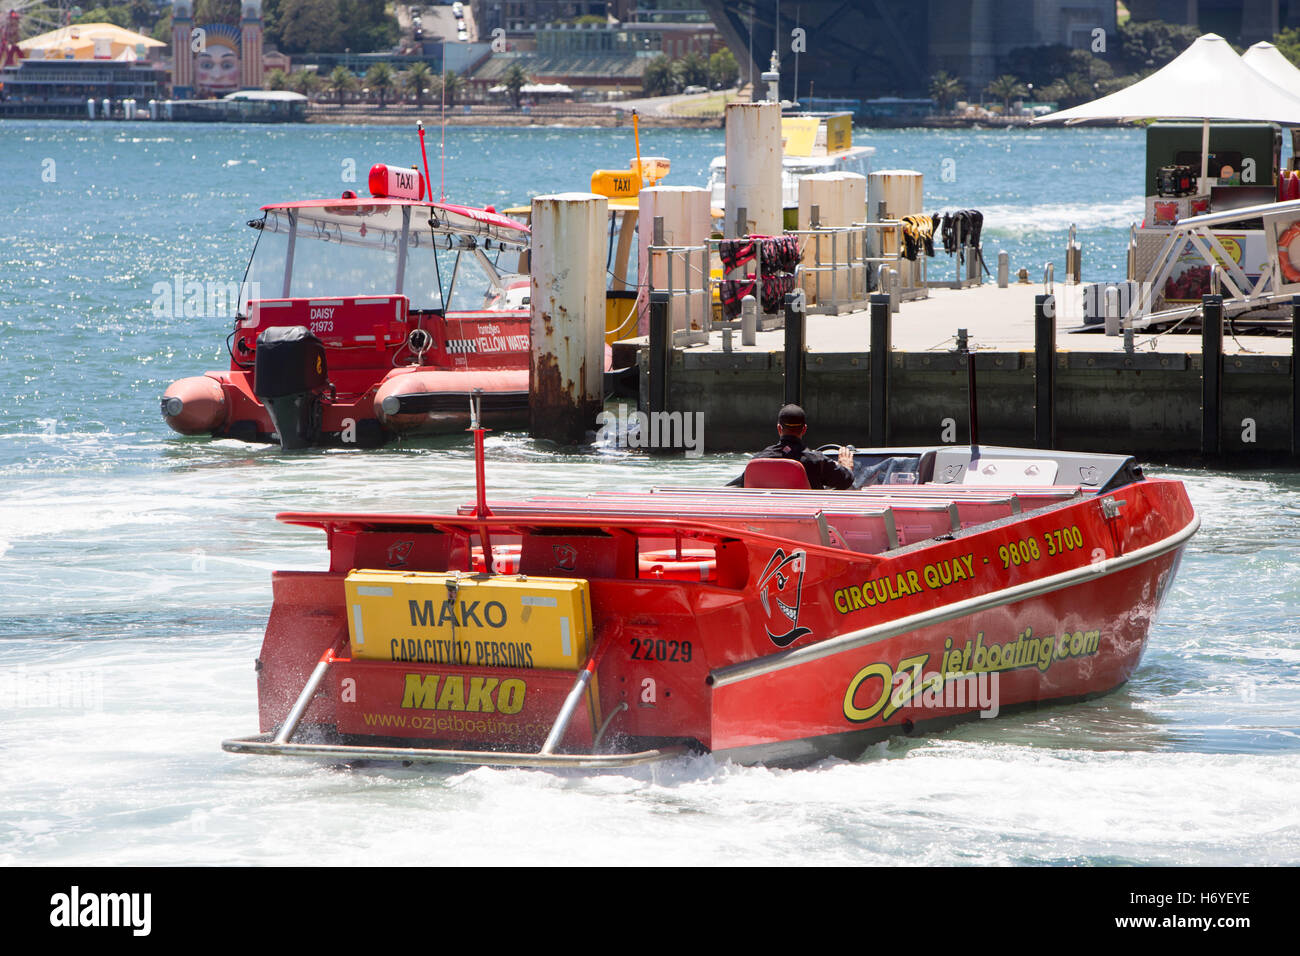 Oz Jet Geschwindigkeit Jetboating im Hafen von Sydney am circular Quay, Sydney, Australien Stockfoto